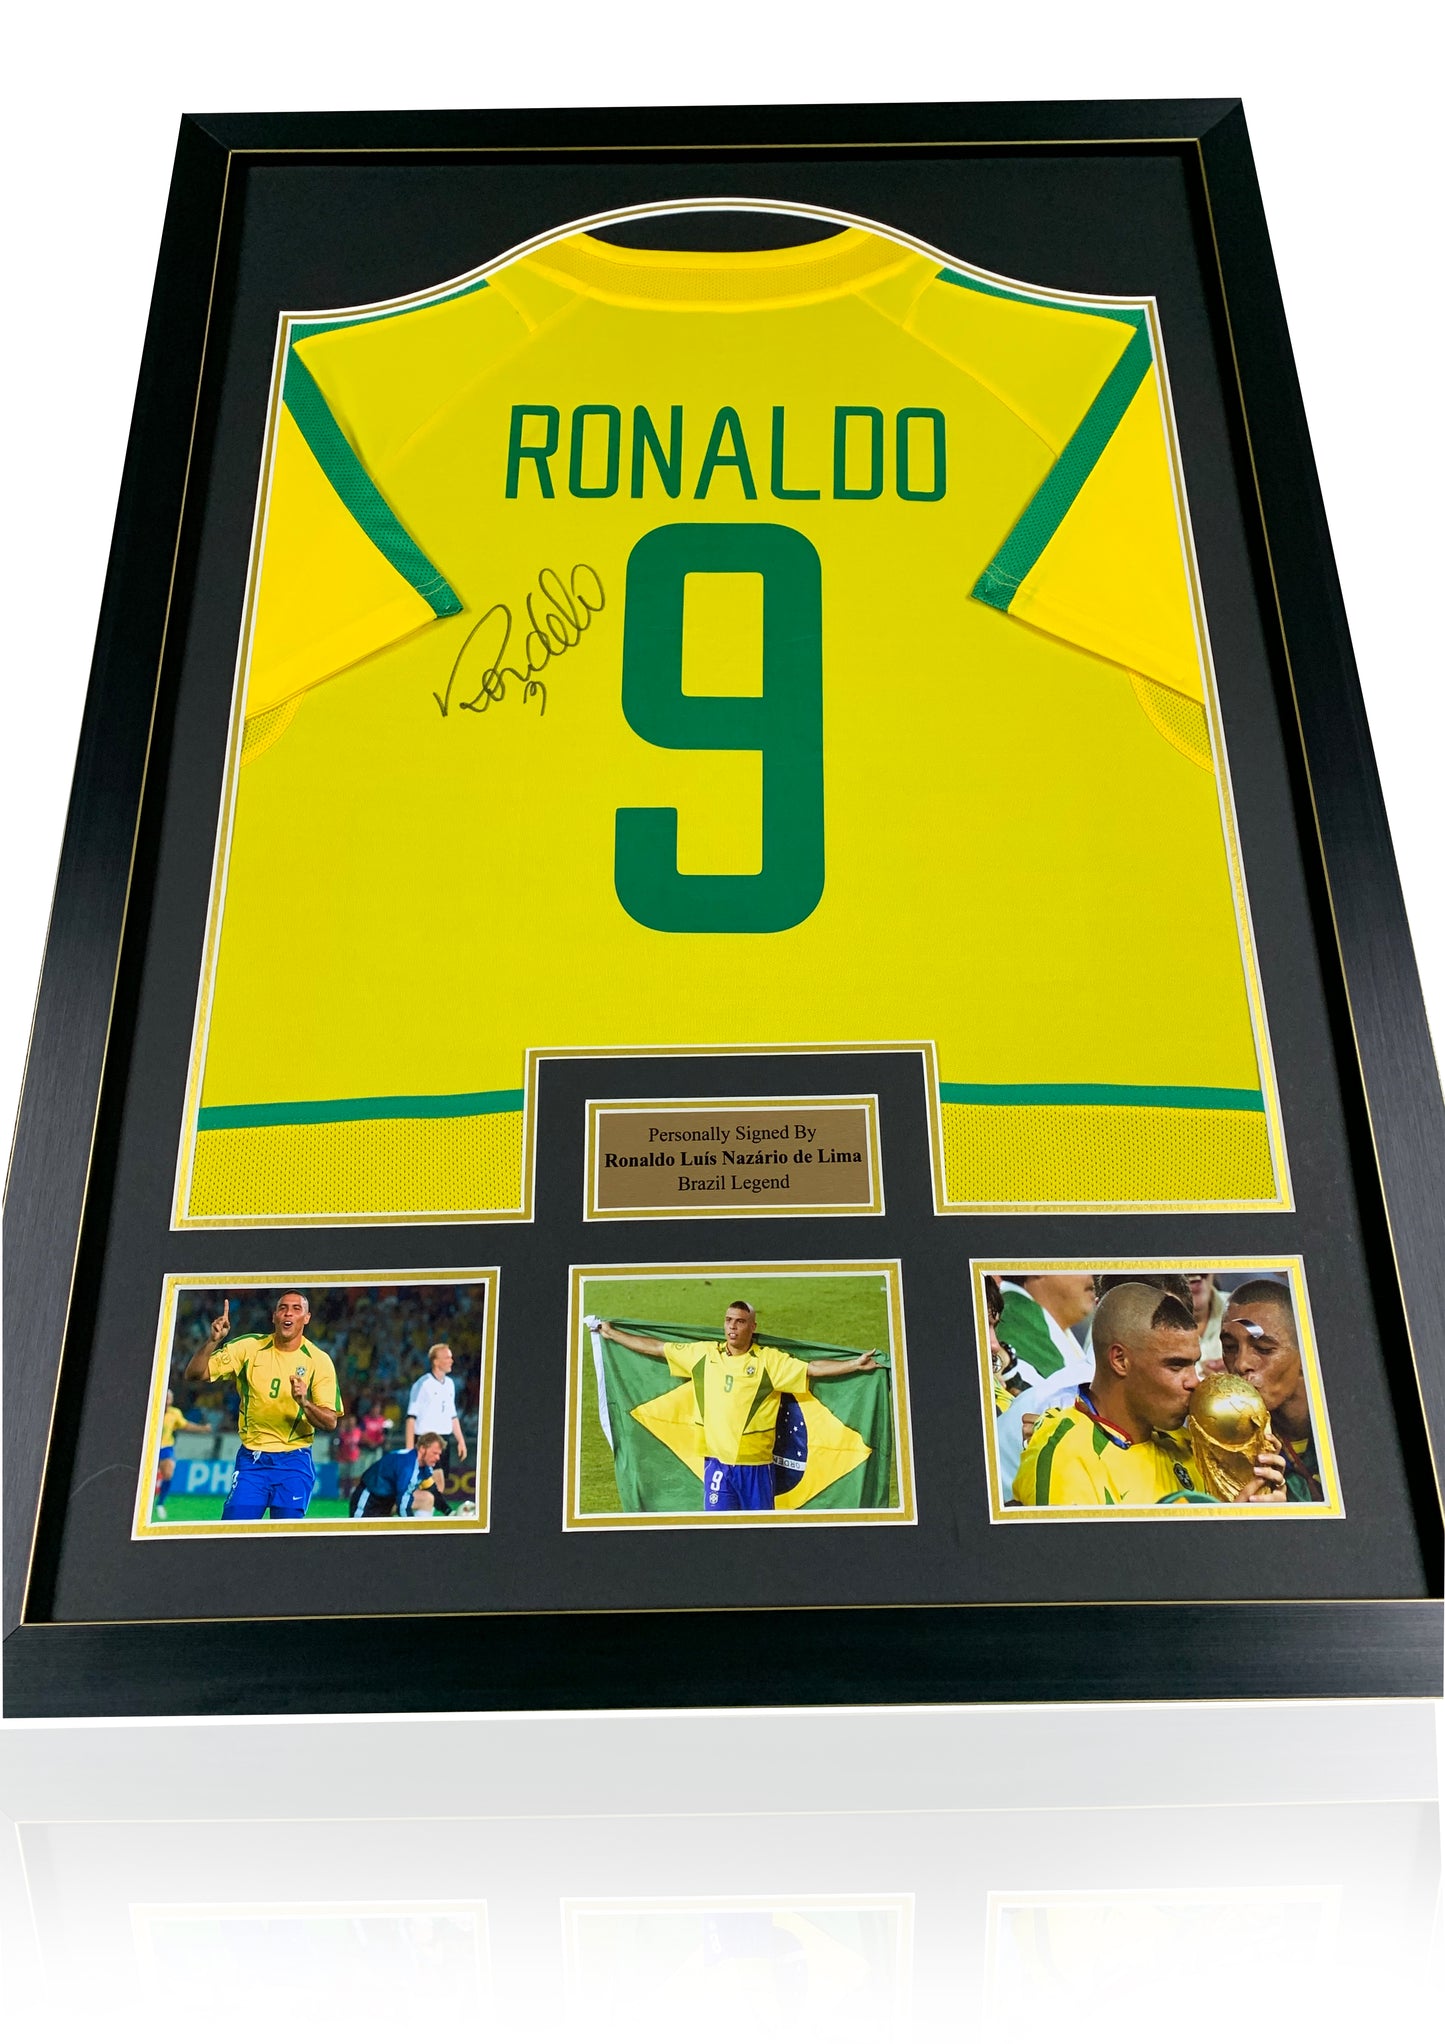 Ronaldo R9 signed Brazil shirt deluxe frame